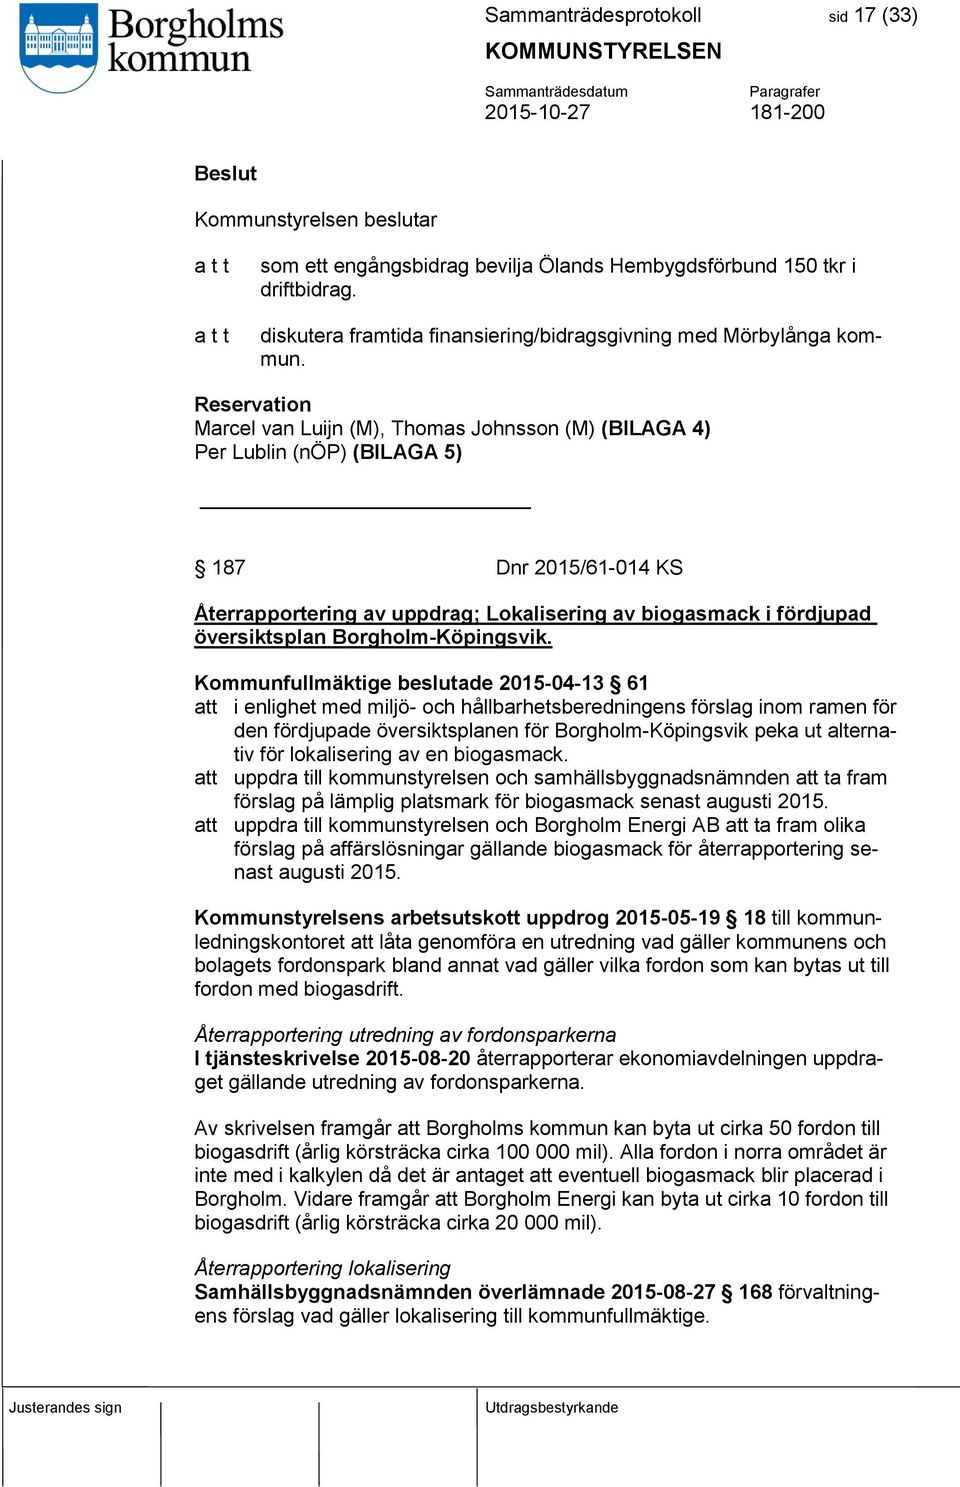 Reservation Marcel van Luijn (M), Thomas Johnsson (M) (BILAGA 4) Per Lublin (nöp) (BILAGA 5) 187 Dnr 2015/61-014 KS Återrapportering av uppdrag; Lokalisering av biogasmack i fördjupad översiktsplan